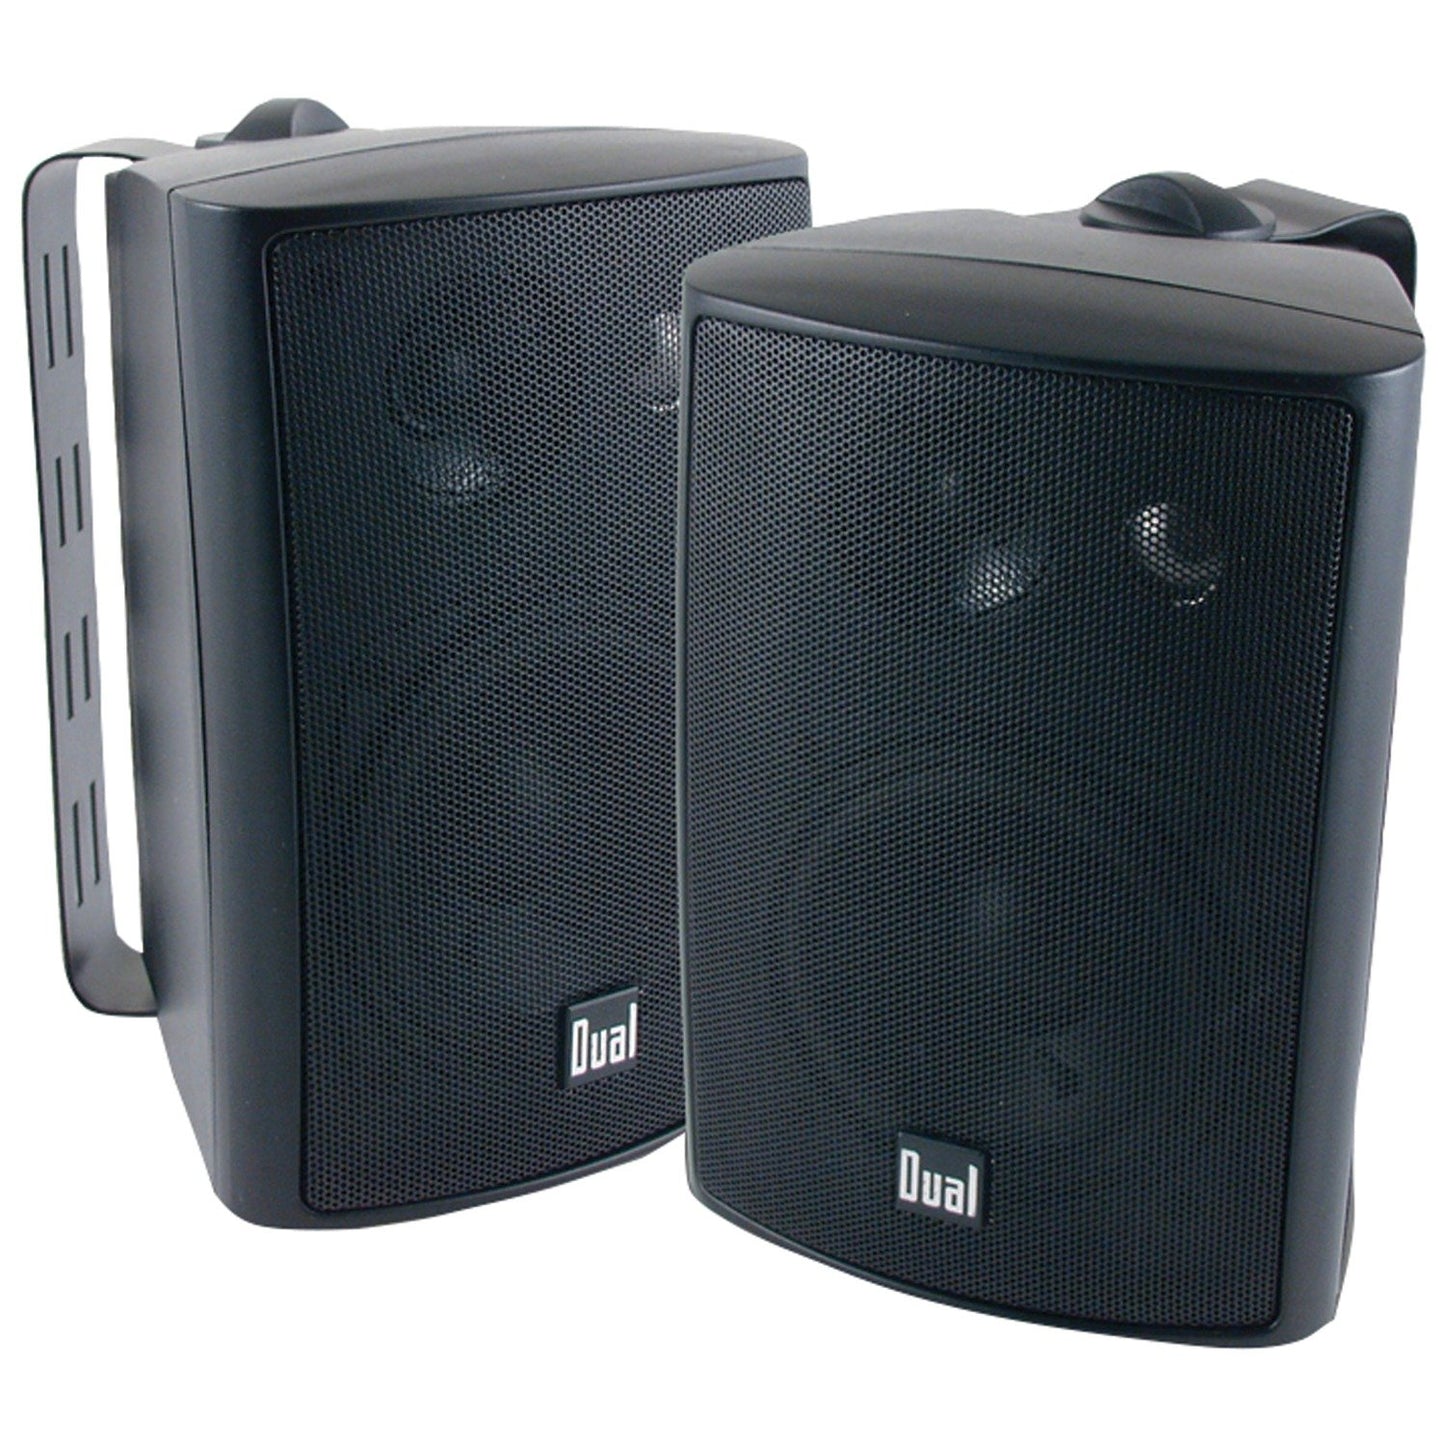 Dual LU47PB 4" 3-Way Indoor/Outdoor Speakers (Black)